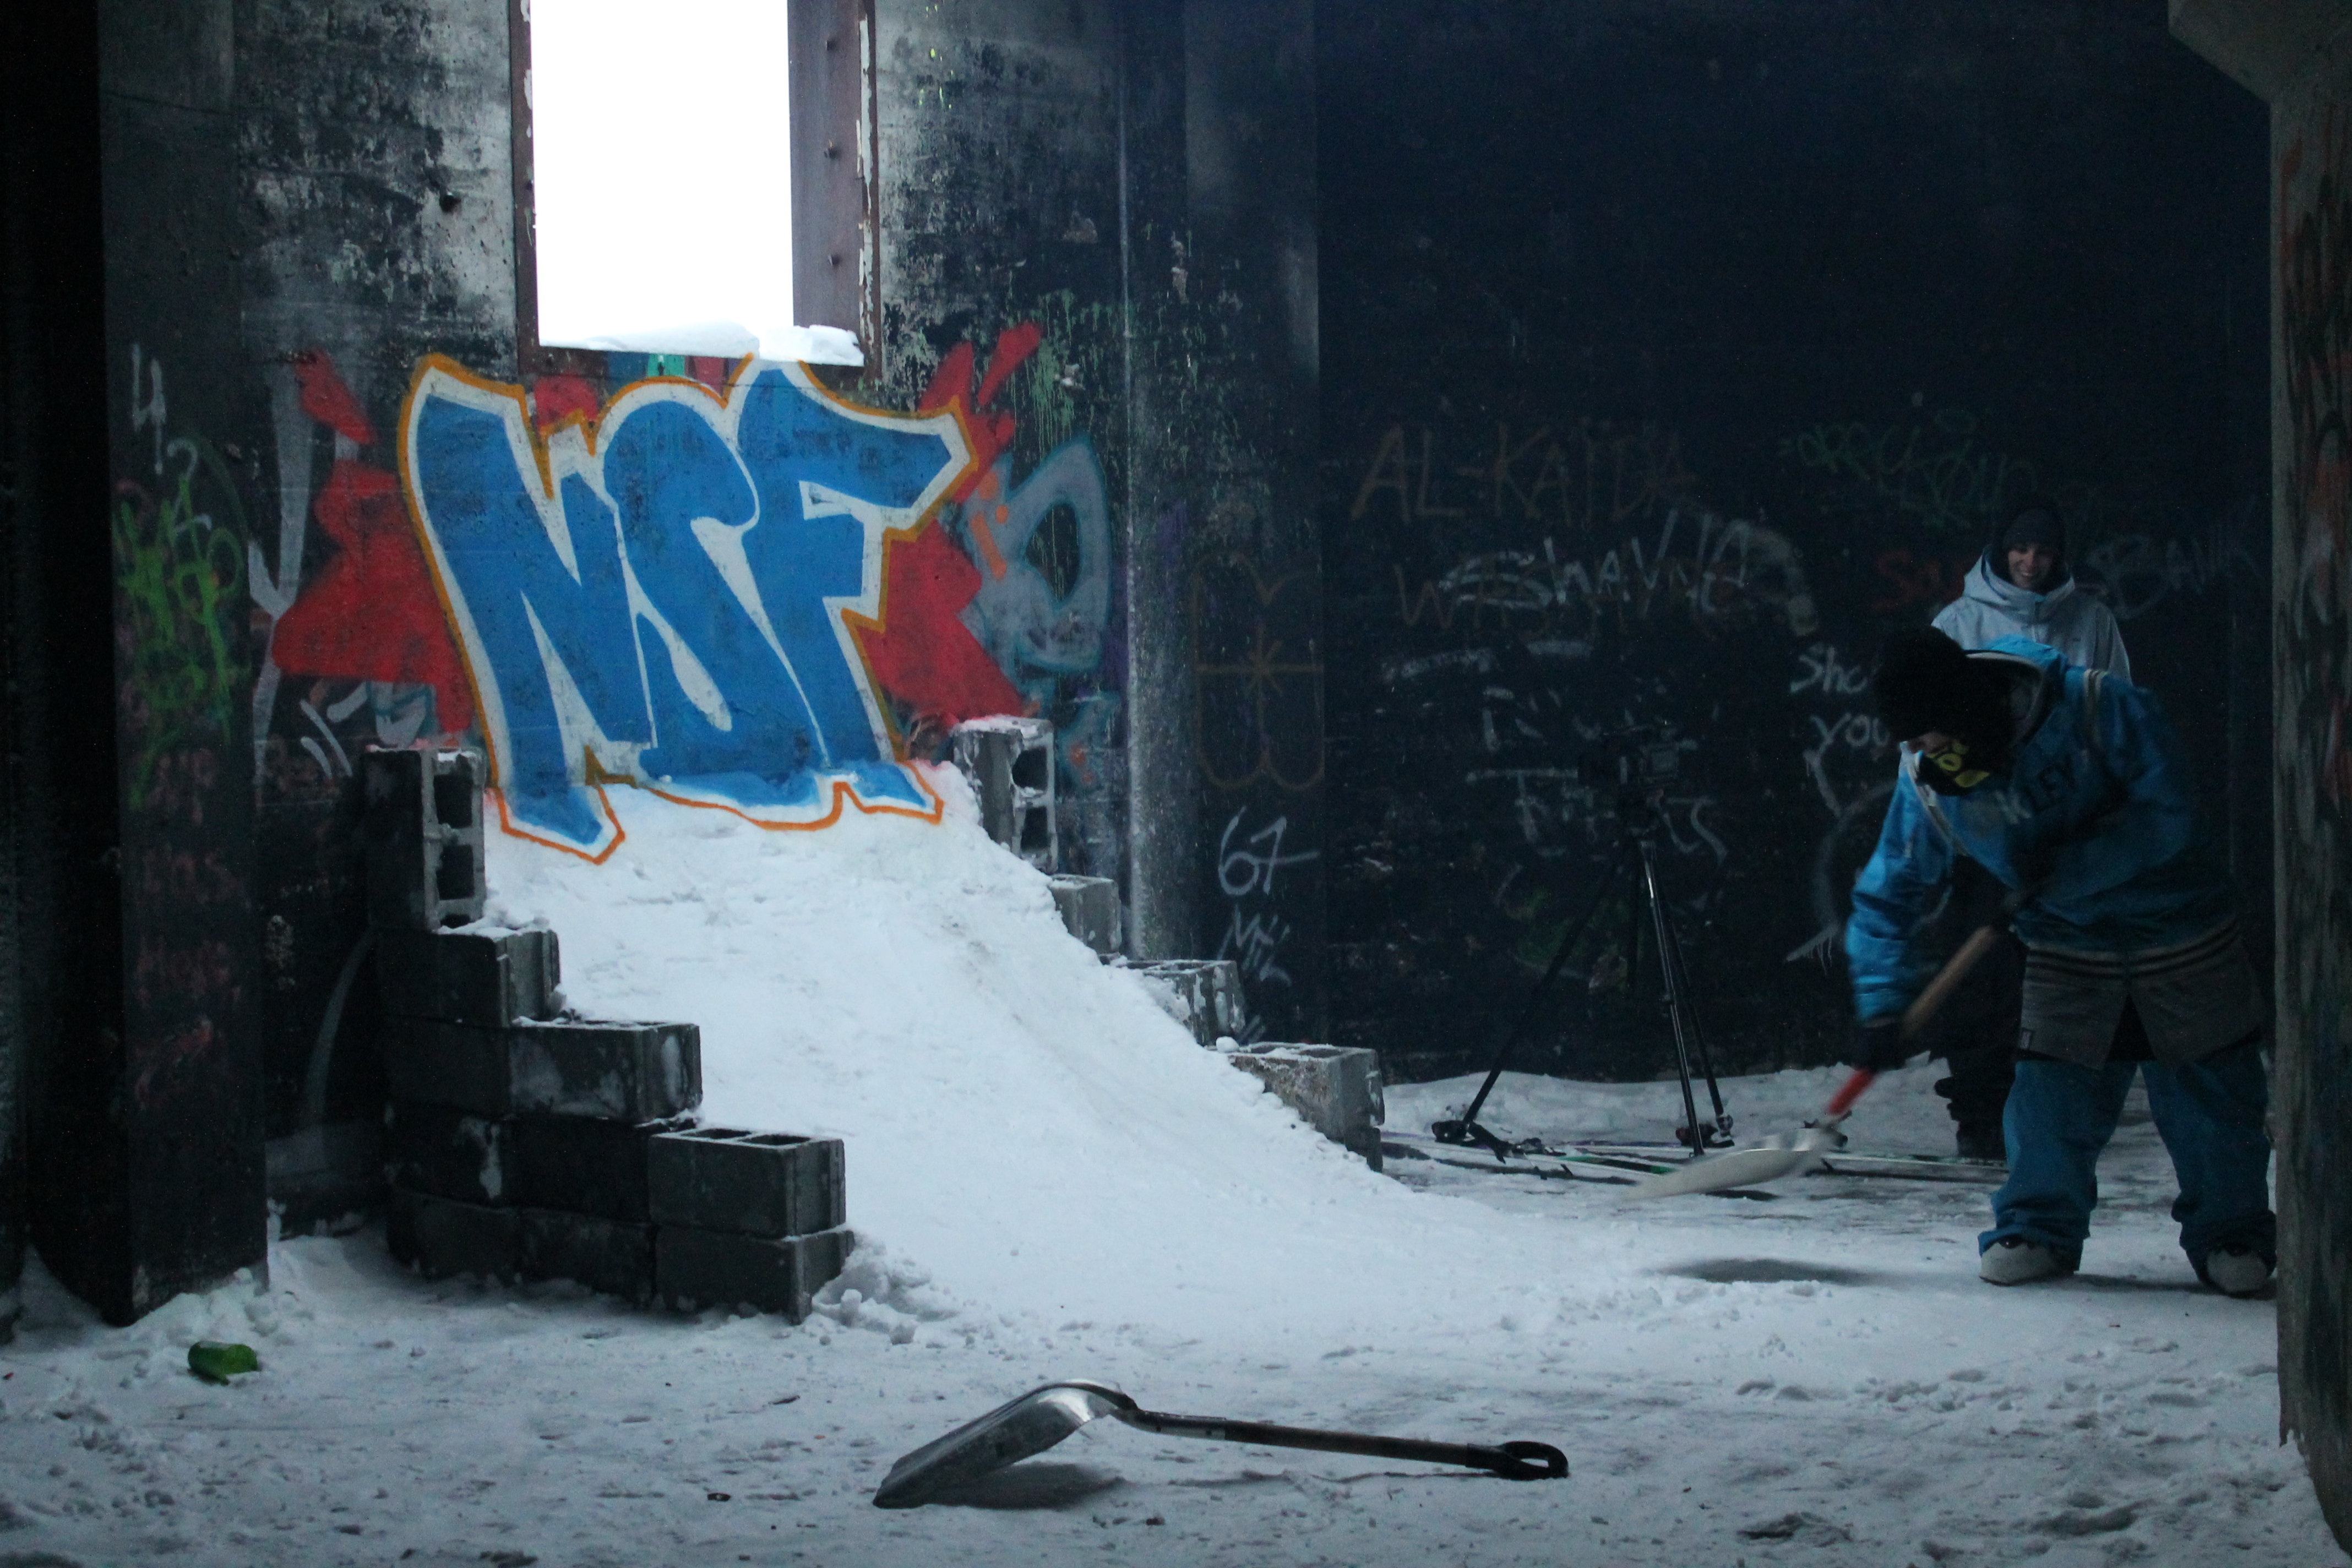 TBT: Backstage pendant les shootings de la compagnie de films de ski NSF au vieux château!